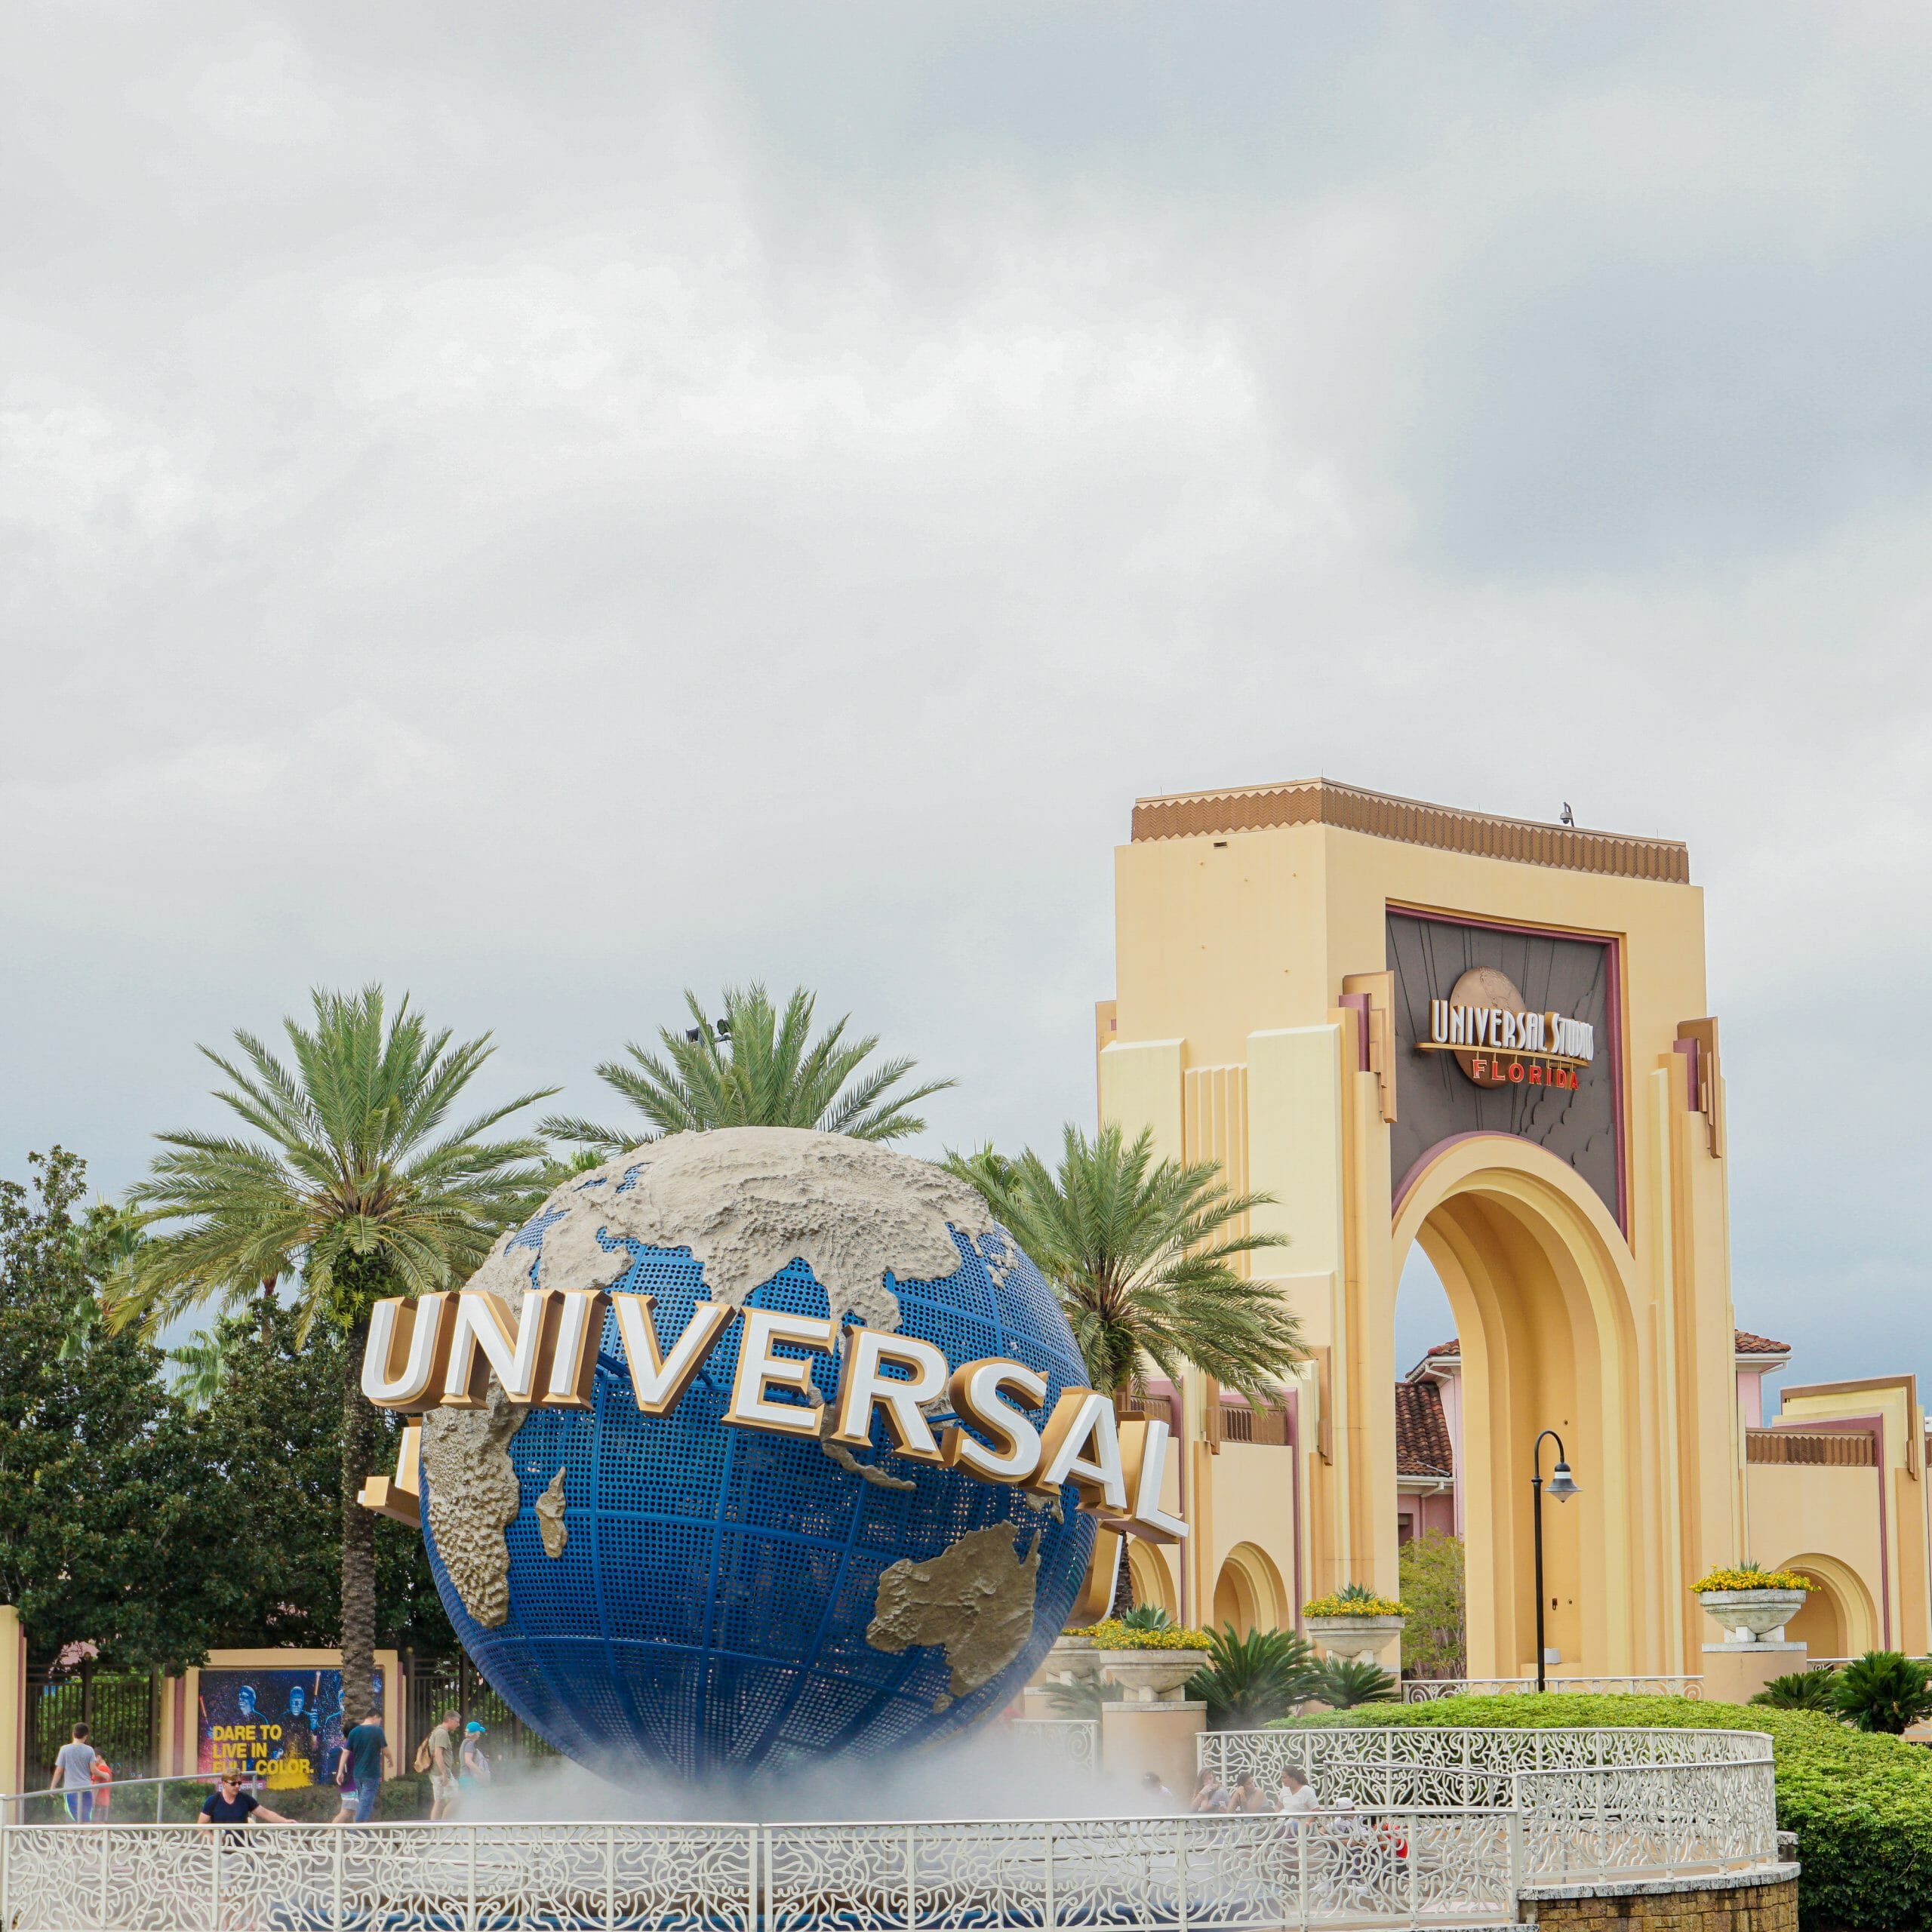 A imagem mostra a entrada do Universal Studios, que mostra o globo, símbolo da Universal, com o nome escrito em letras grandes ao seu redor.